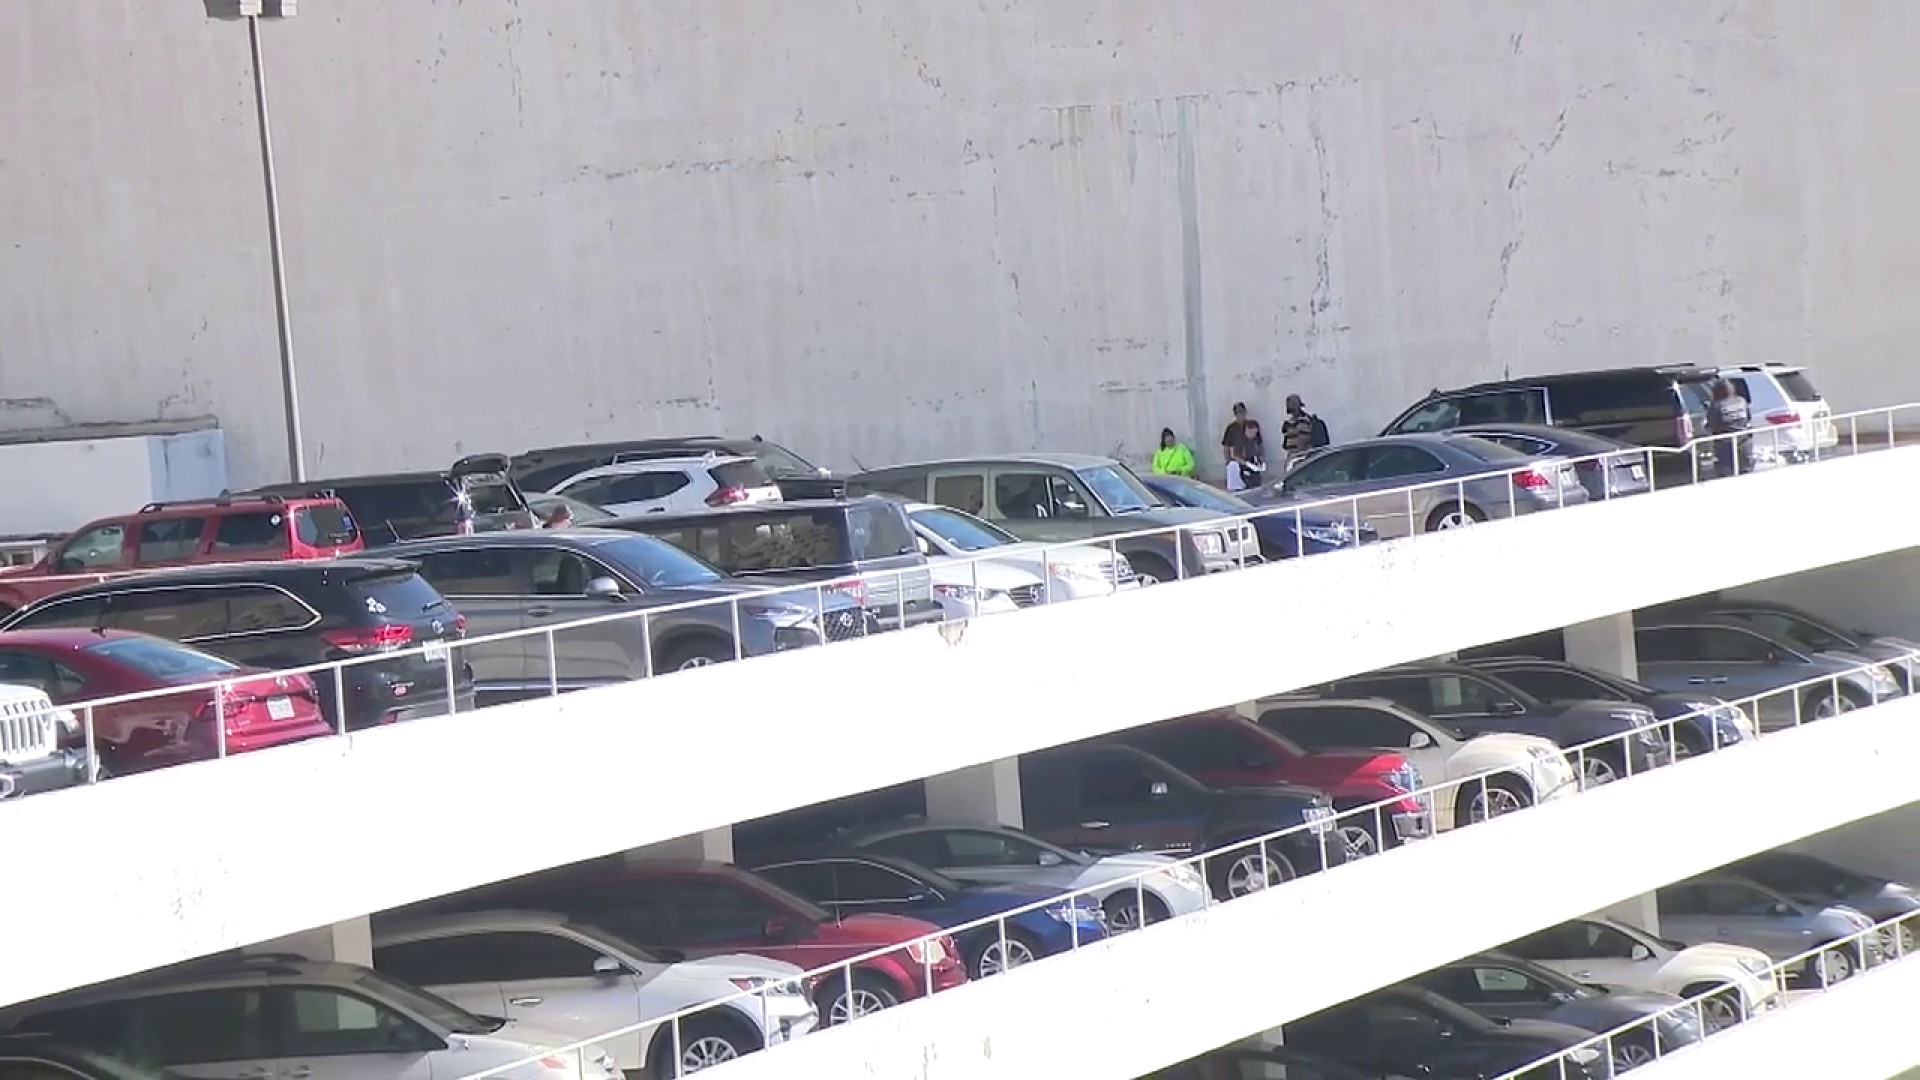 24 vehículos fueron robados de un estacionamiento en el centro de Miami